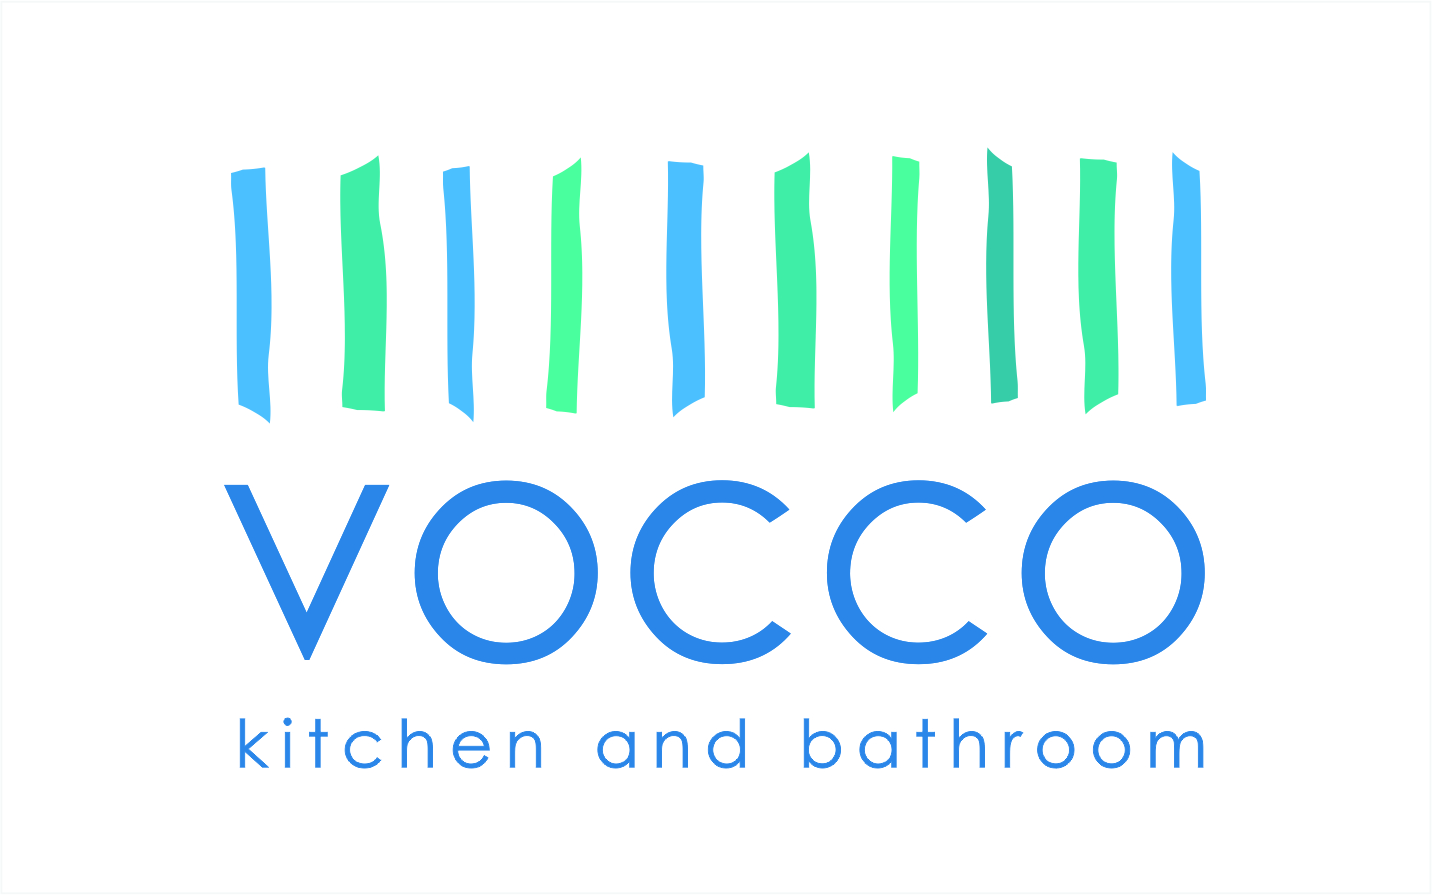 Vocco Kitchen and Bathroom Łukasz Radkow